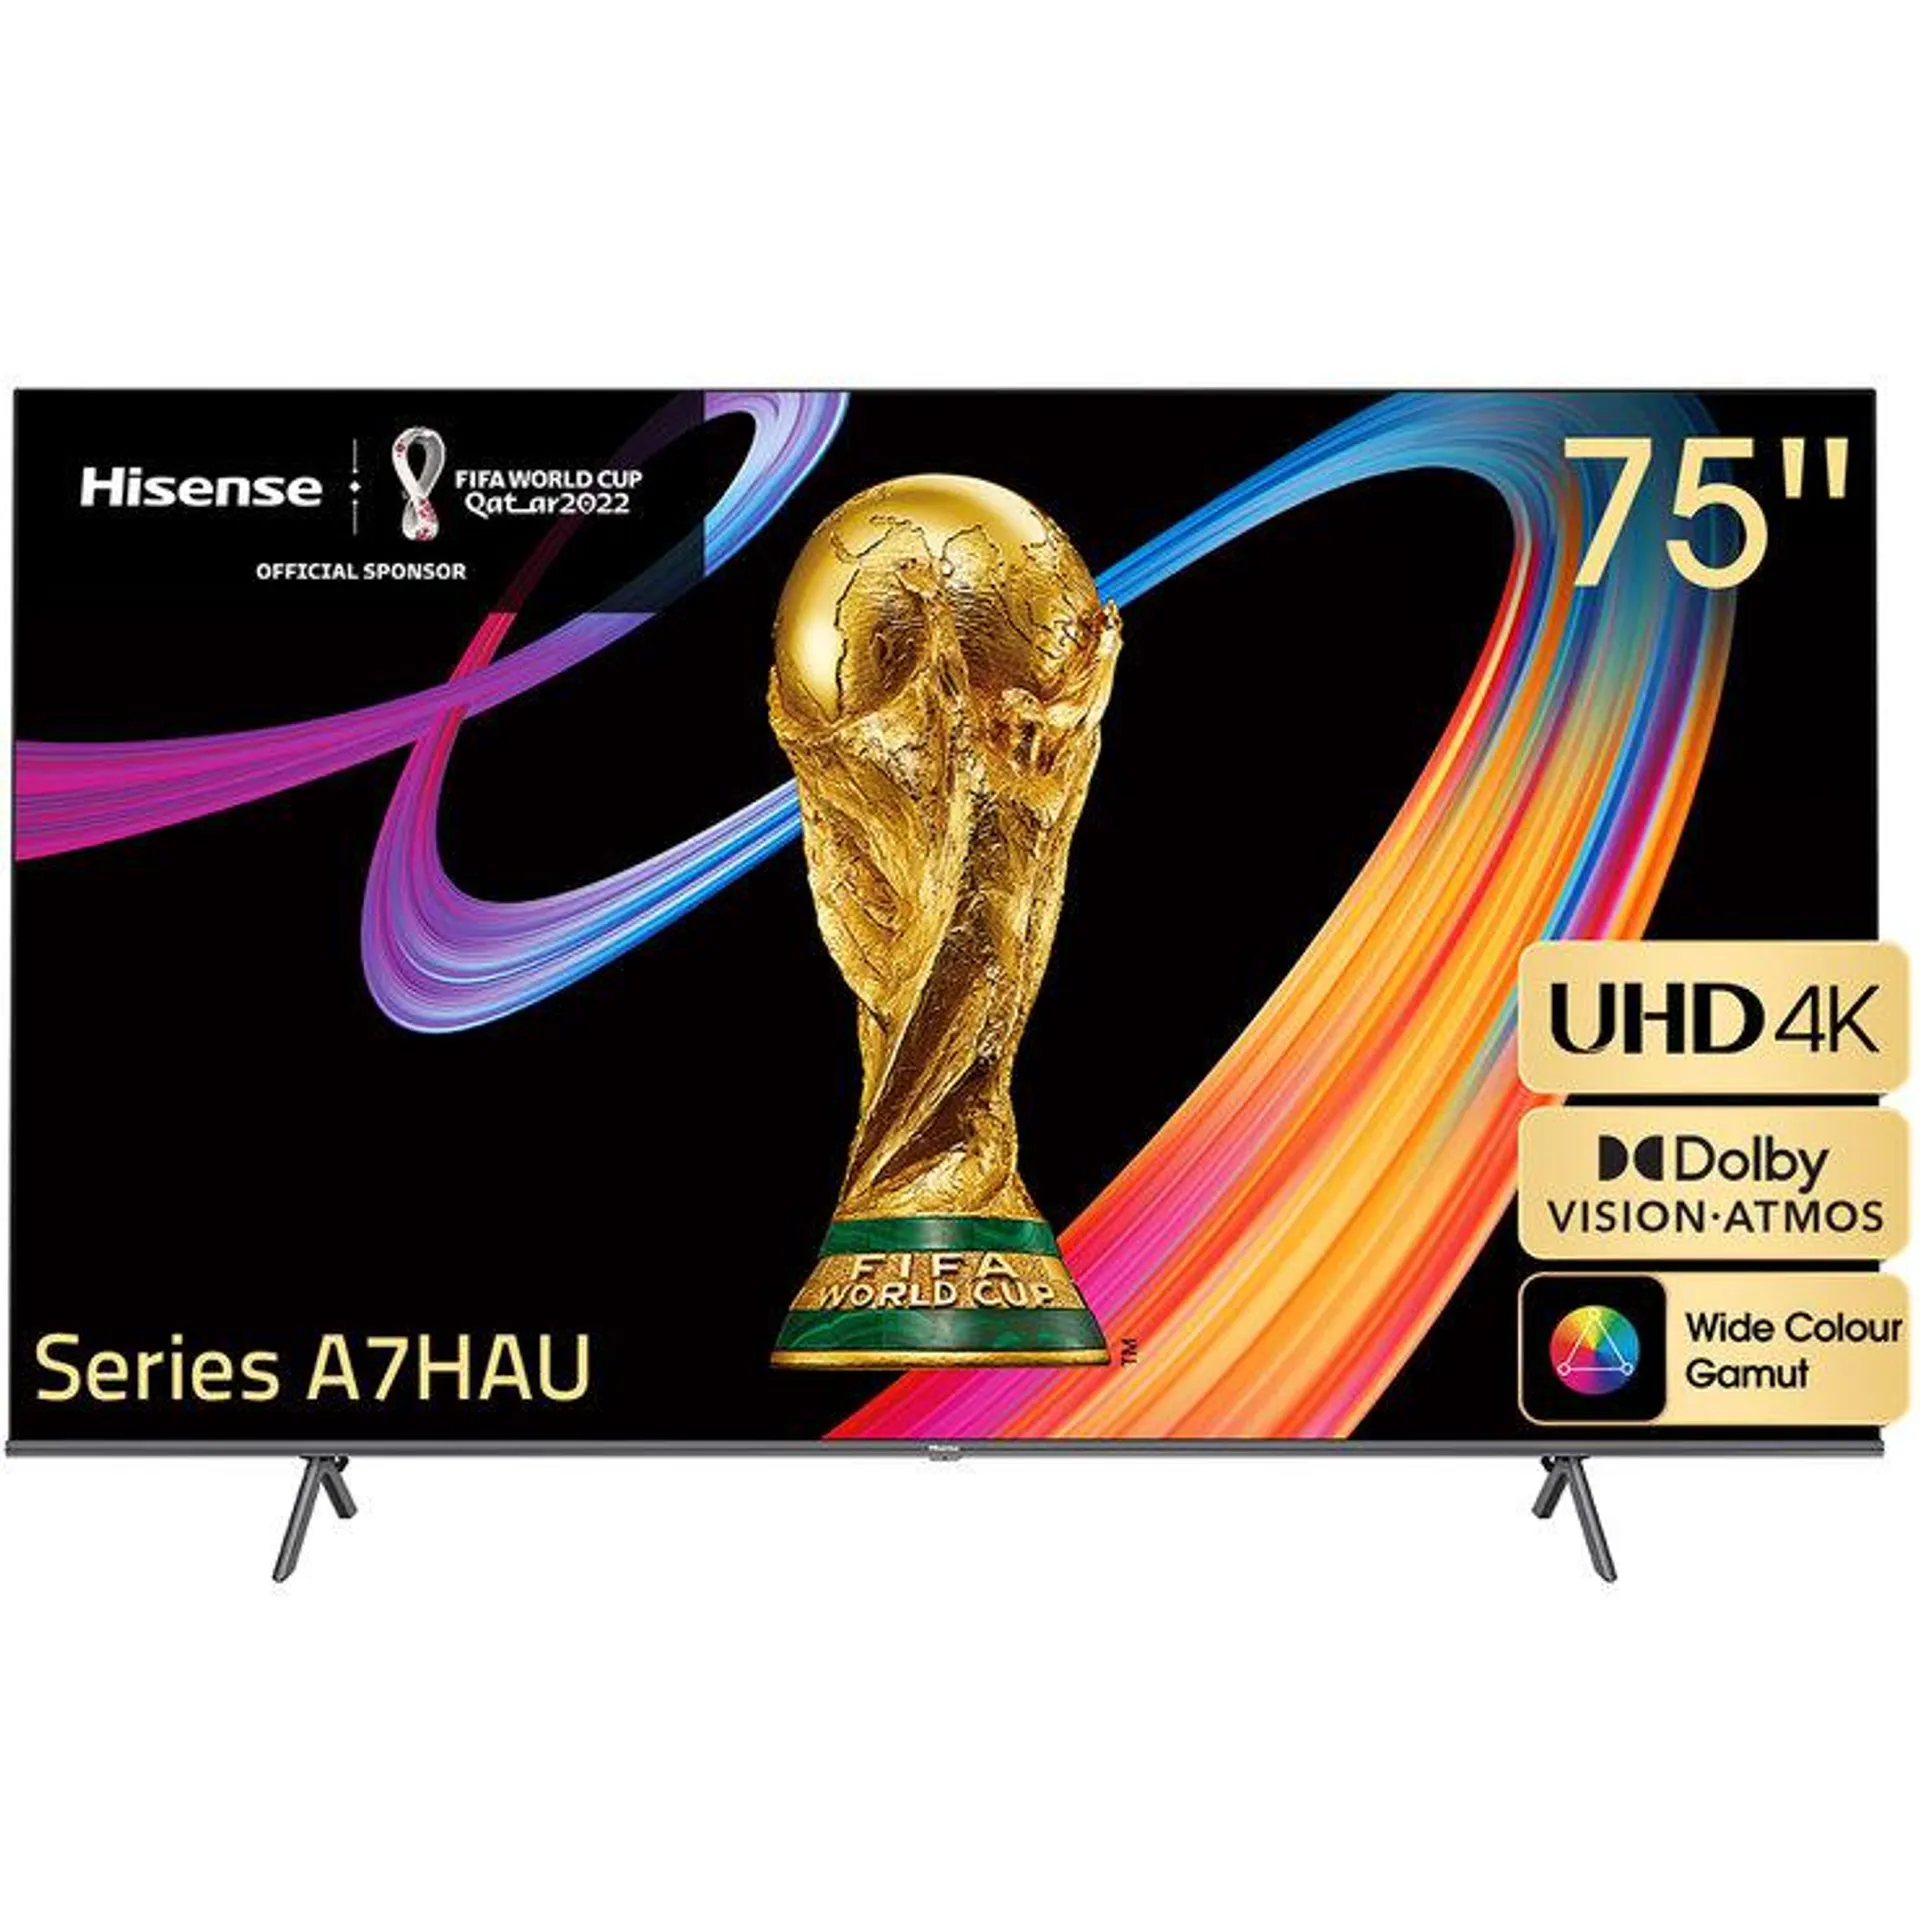 Hisense 75 Inch UHD 4K Smart TV 75A7HAU